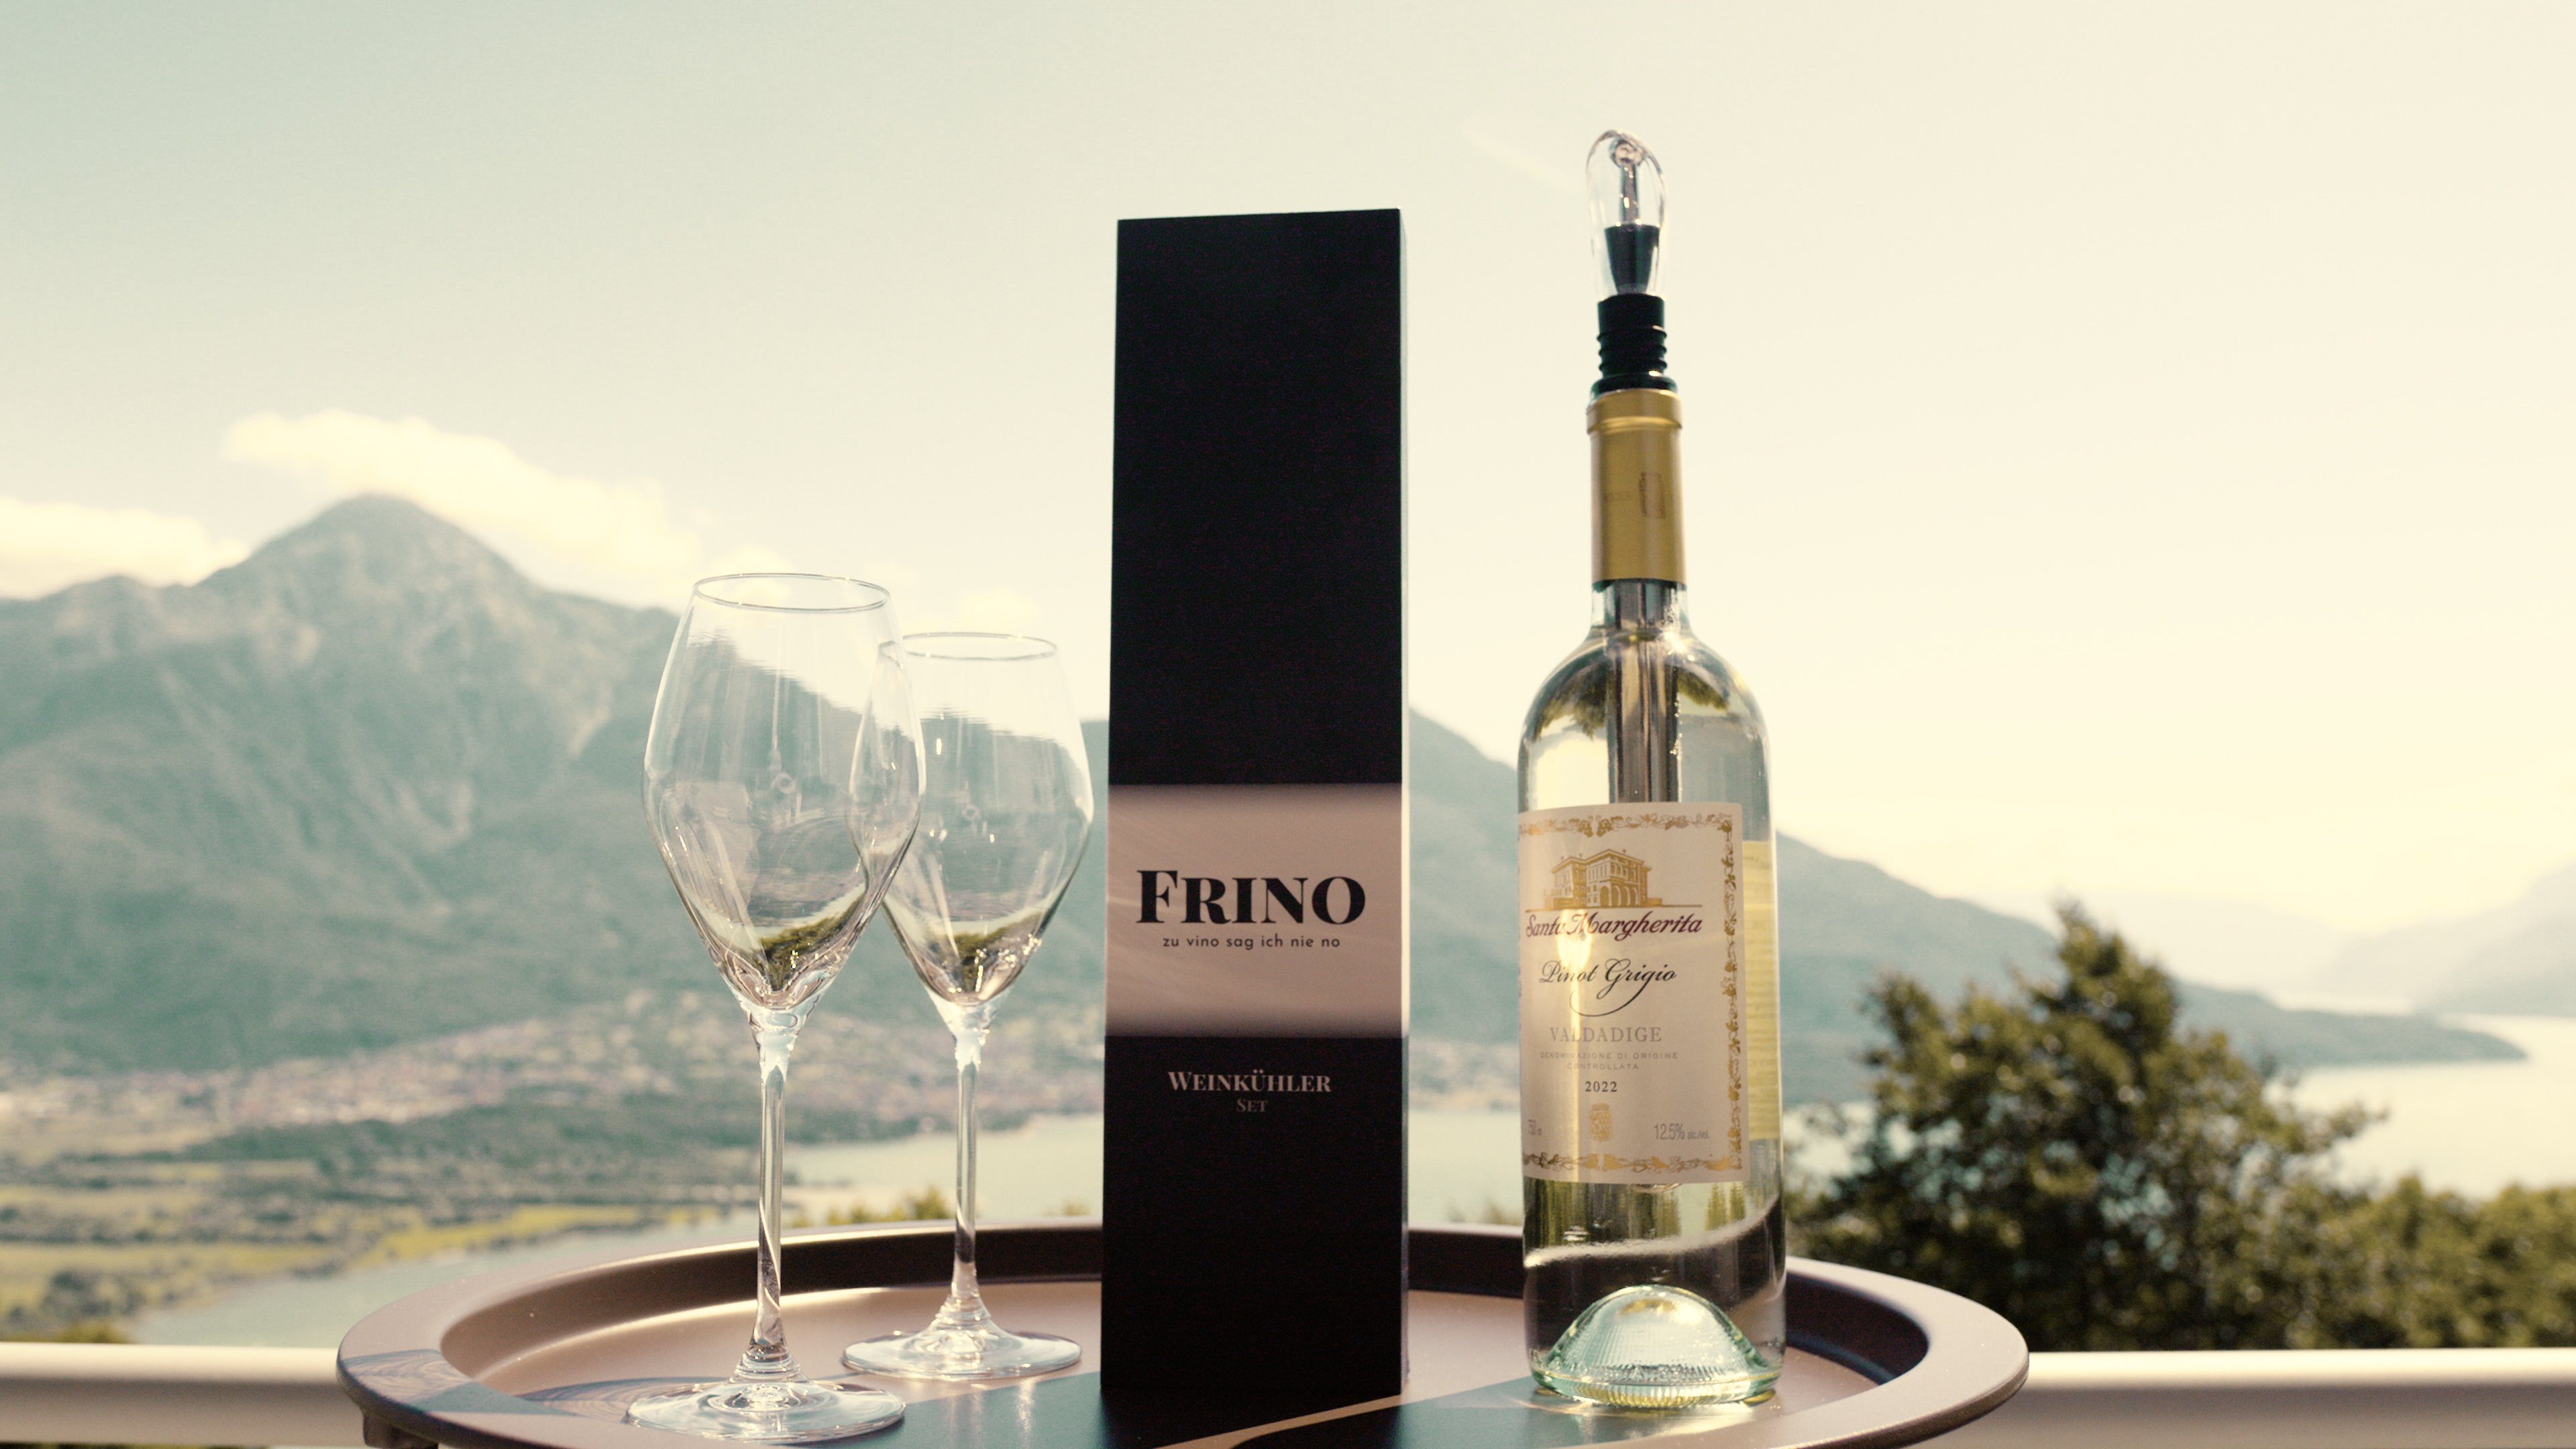 Premium Weinkühlstab [2 FRINO™ mit Sektkühler und Wein- FRINO GRÖSSEN] Ausgießer, Geschenkidee Set Weinkühler